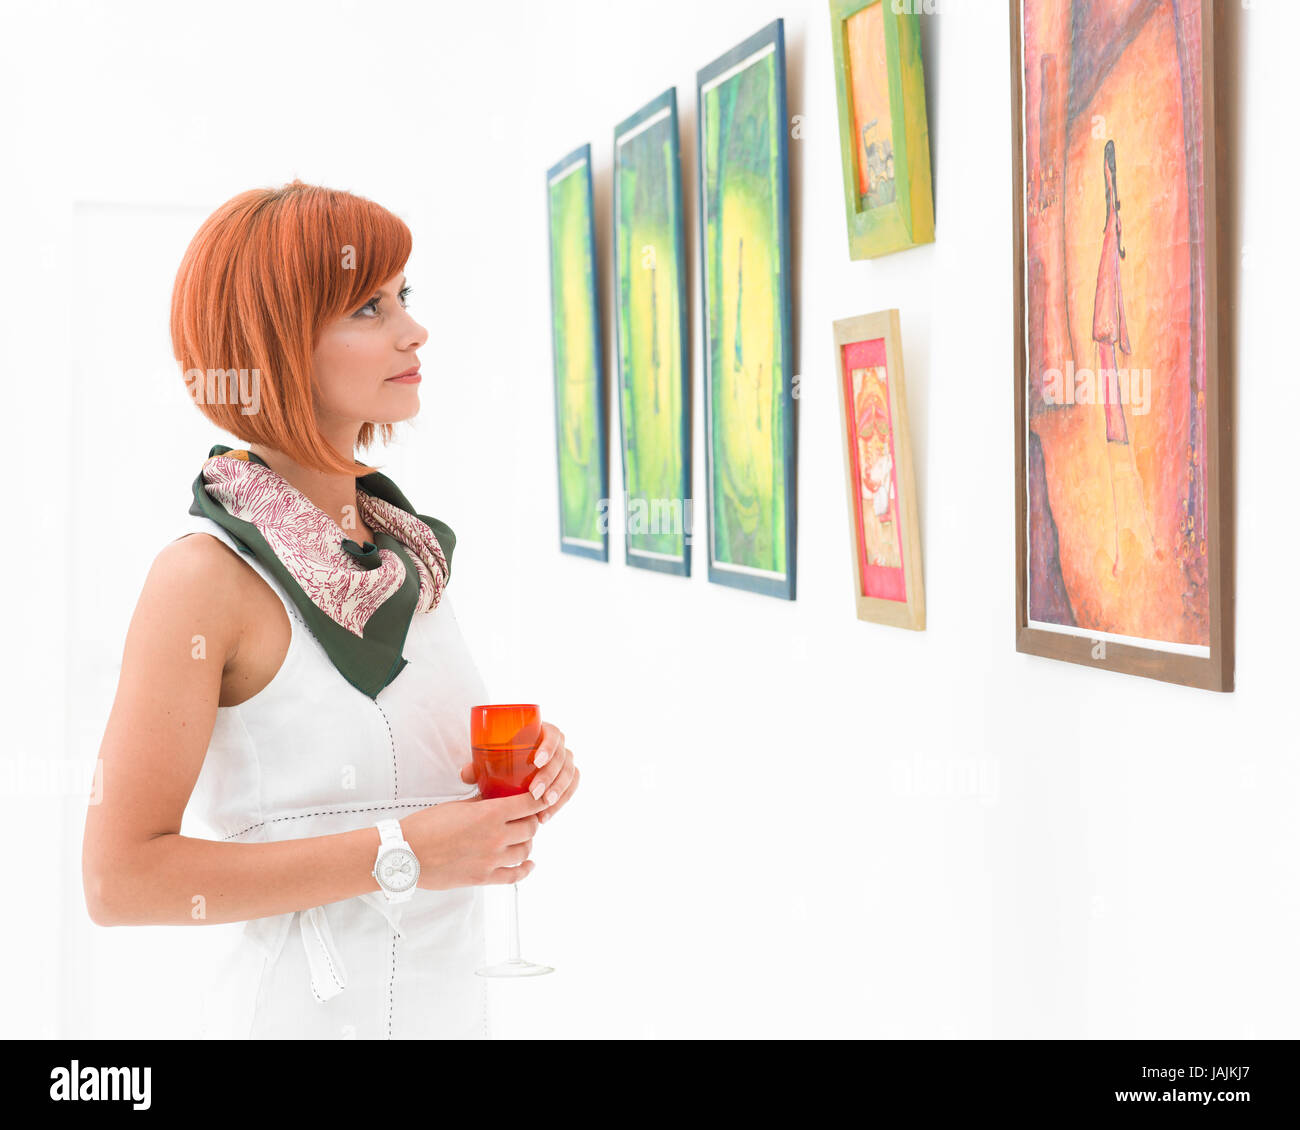 Kaukasische junge rothaarige Frau, die in einem Museum bewundern bunte gerahmte Gemälde Stockfoto